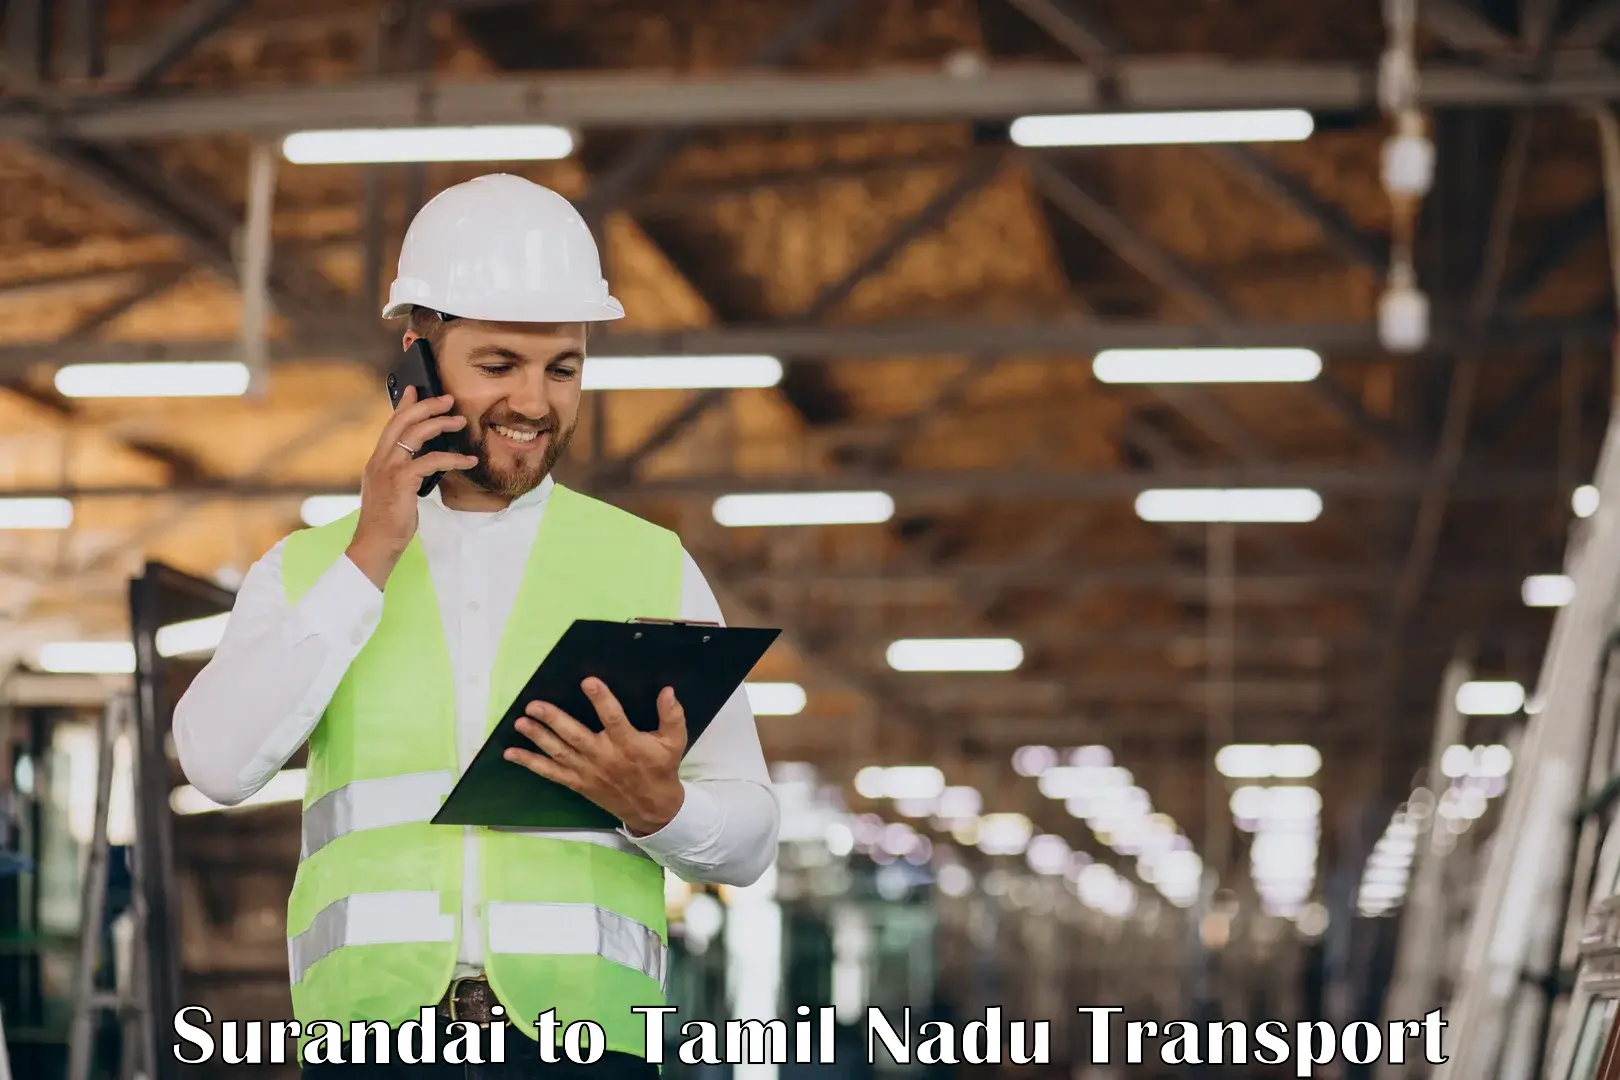 Commercial transport service Surandai to Gudiyattam